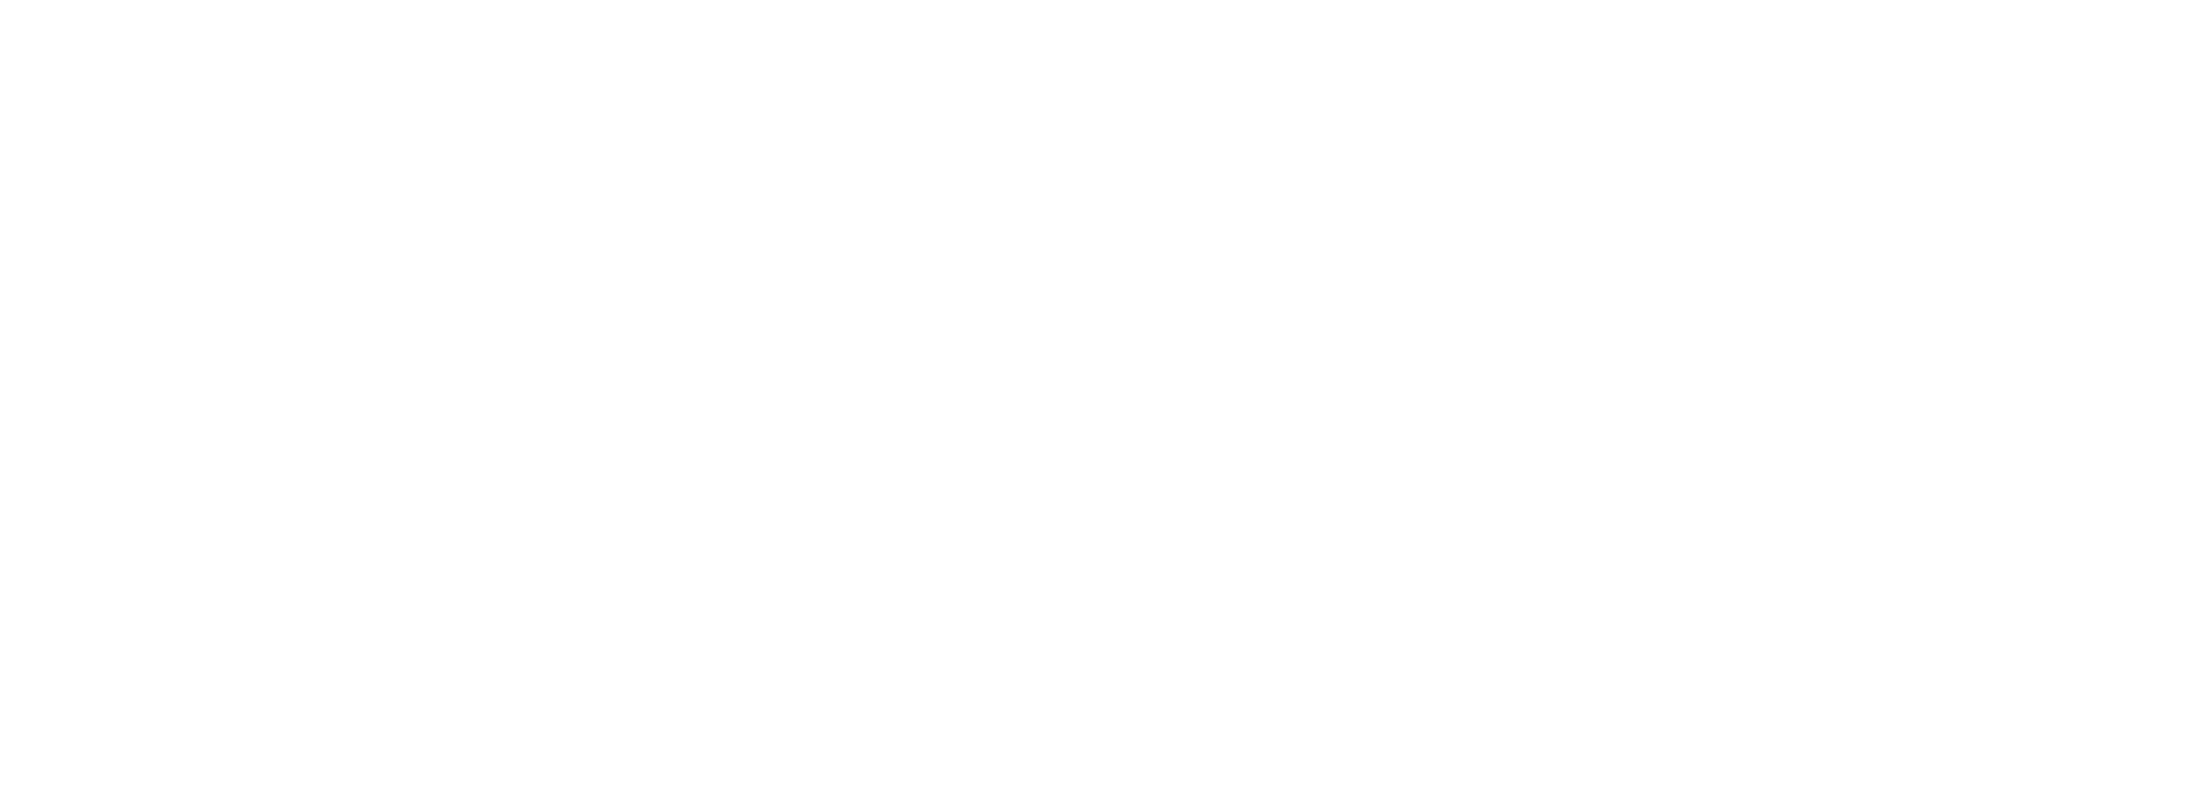 Falkenbergs kommun